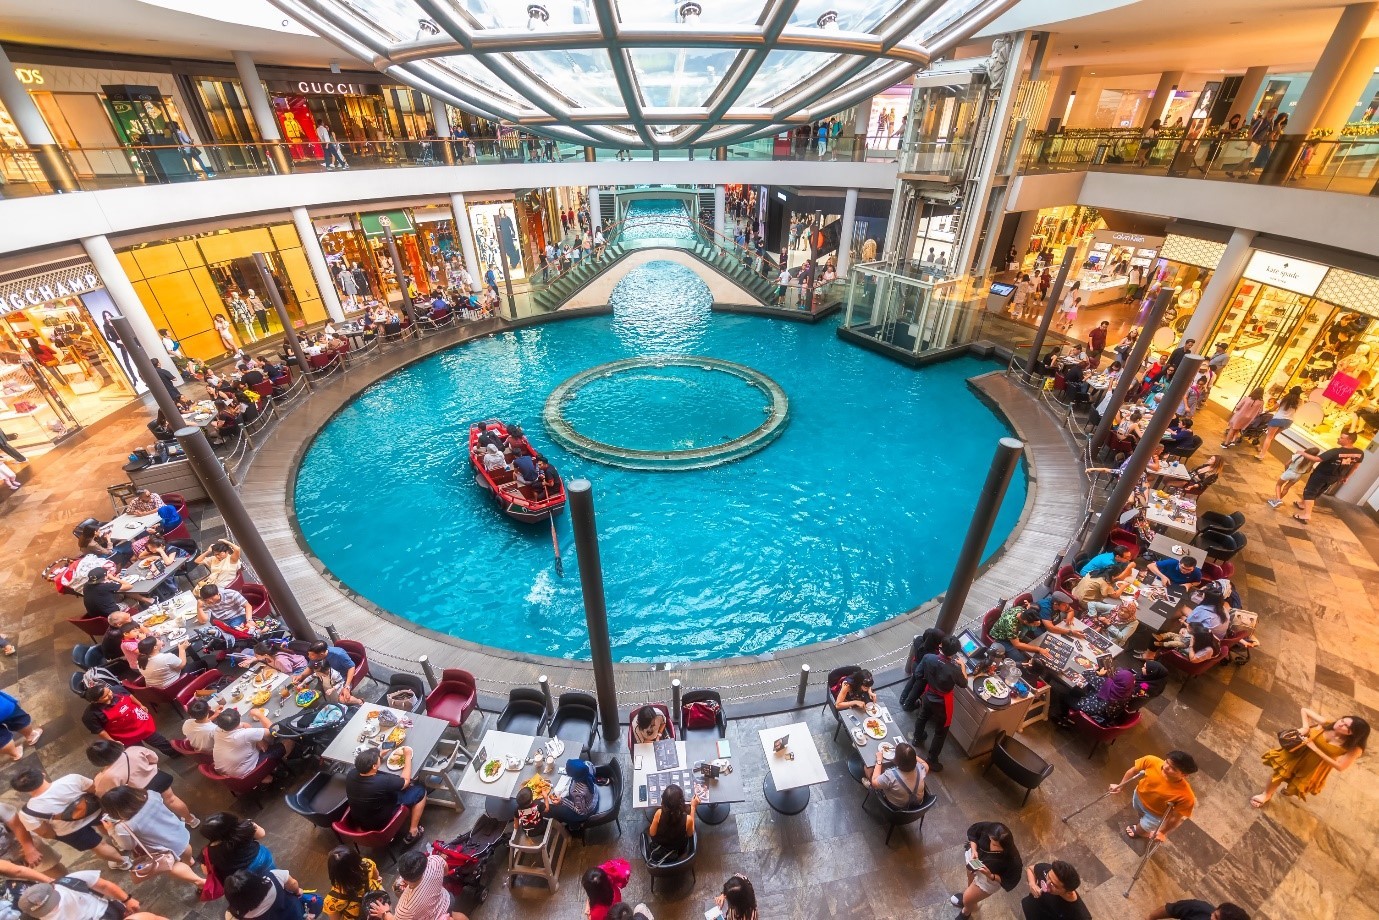 Mô hình mua sắm “Shopping by The Pool” tại The Shoppes Marina Bay Sands (Singapore).